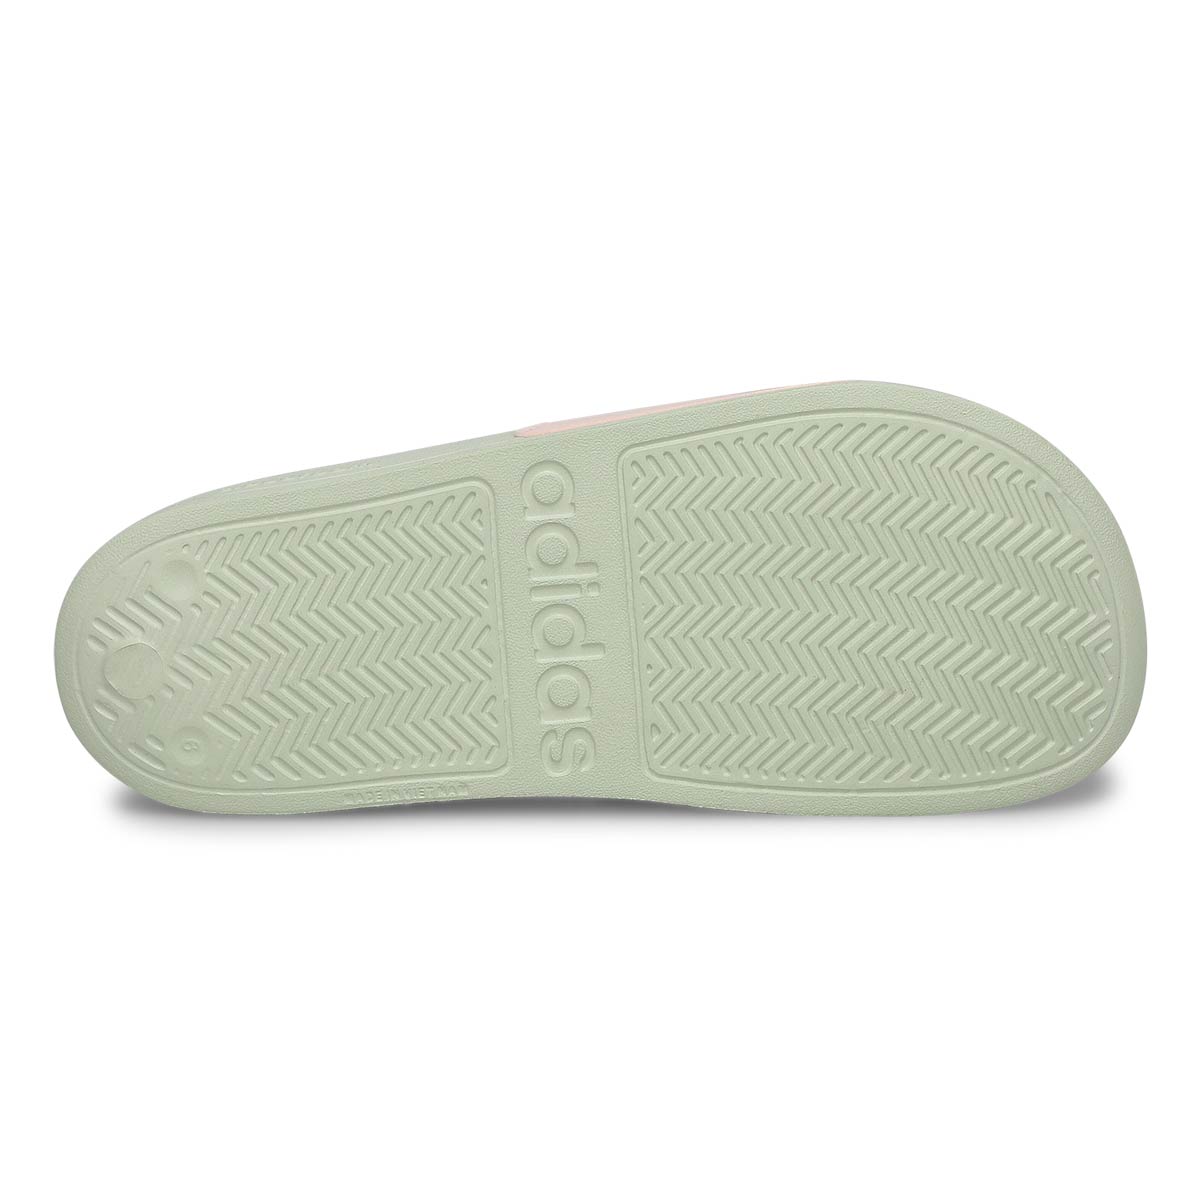 Women's Adilette Shower Slide Sandal - Quartz/Mint